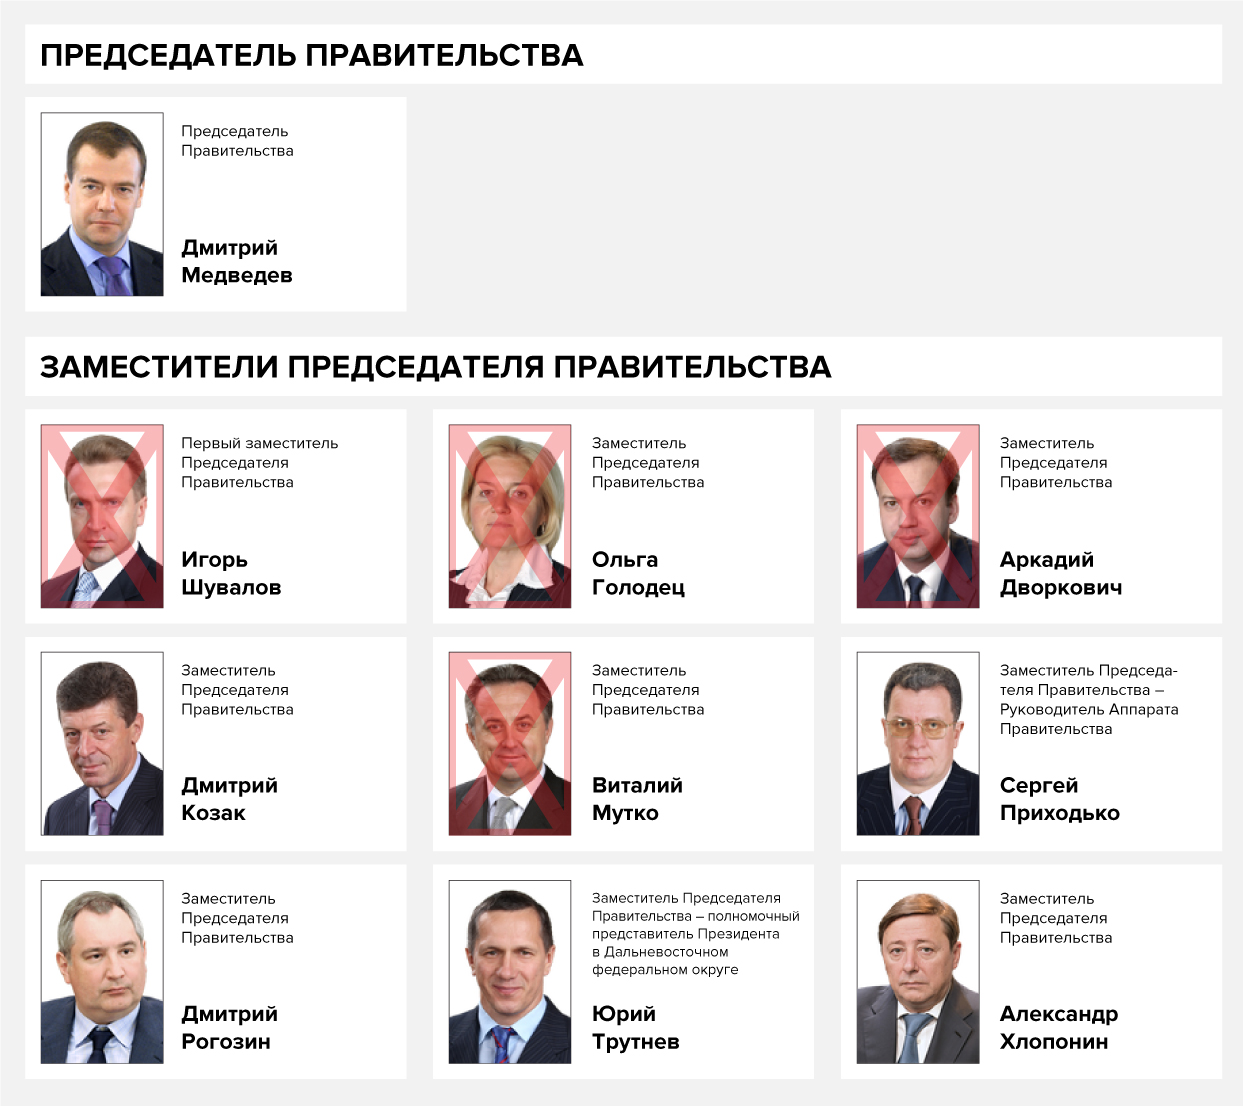 Председатели правительства России с 1991 года список